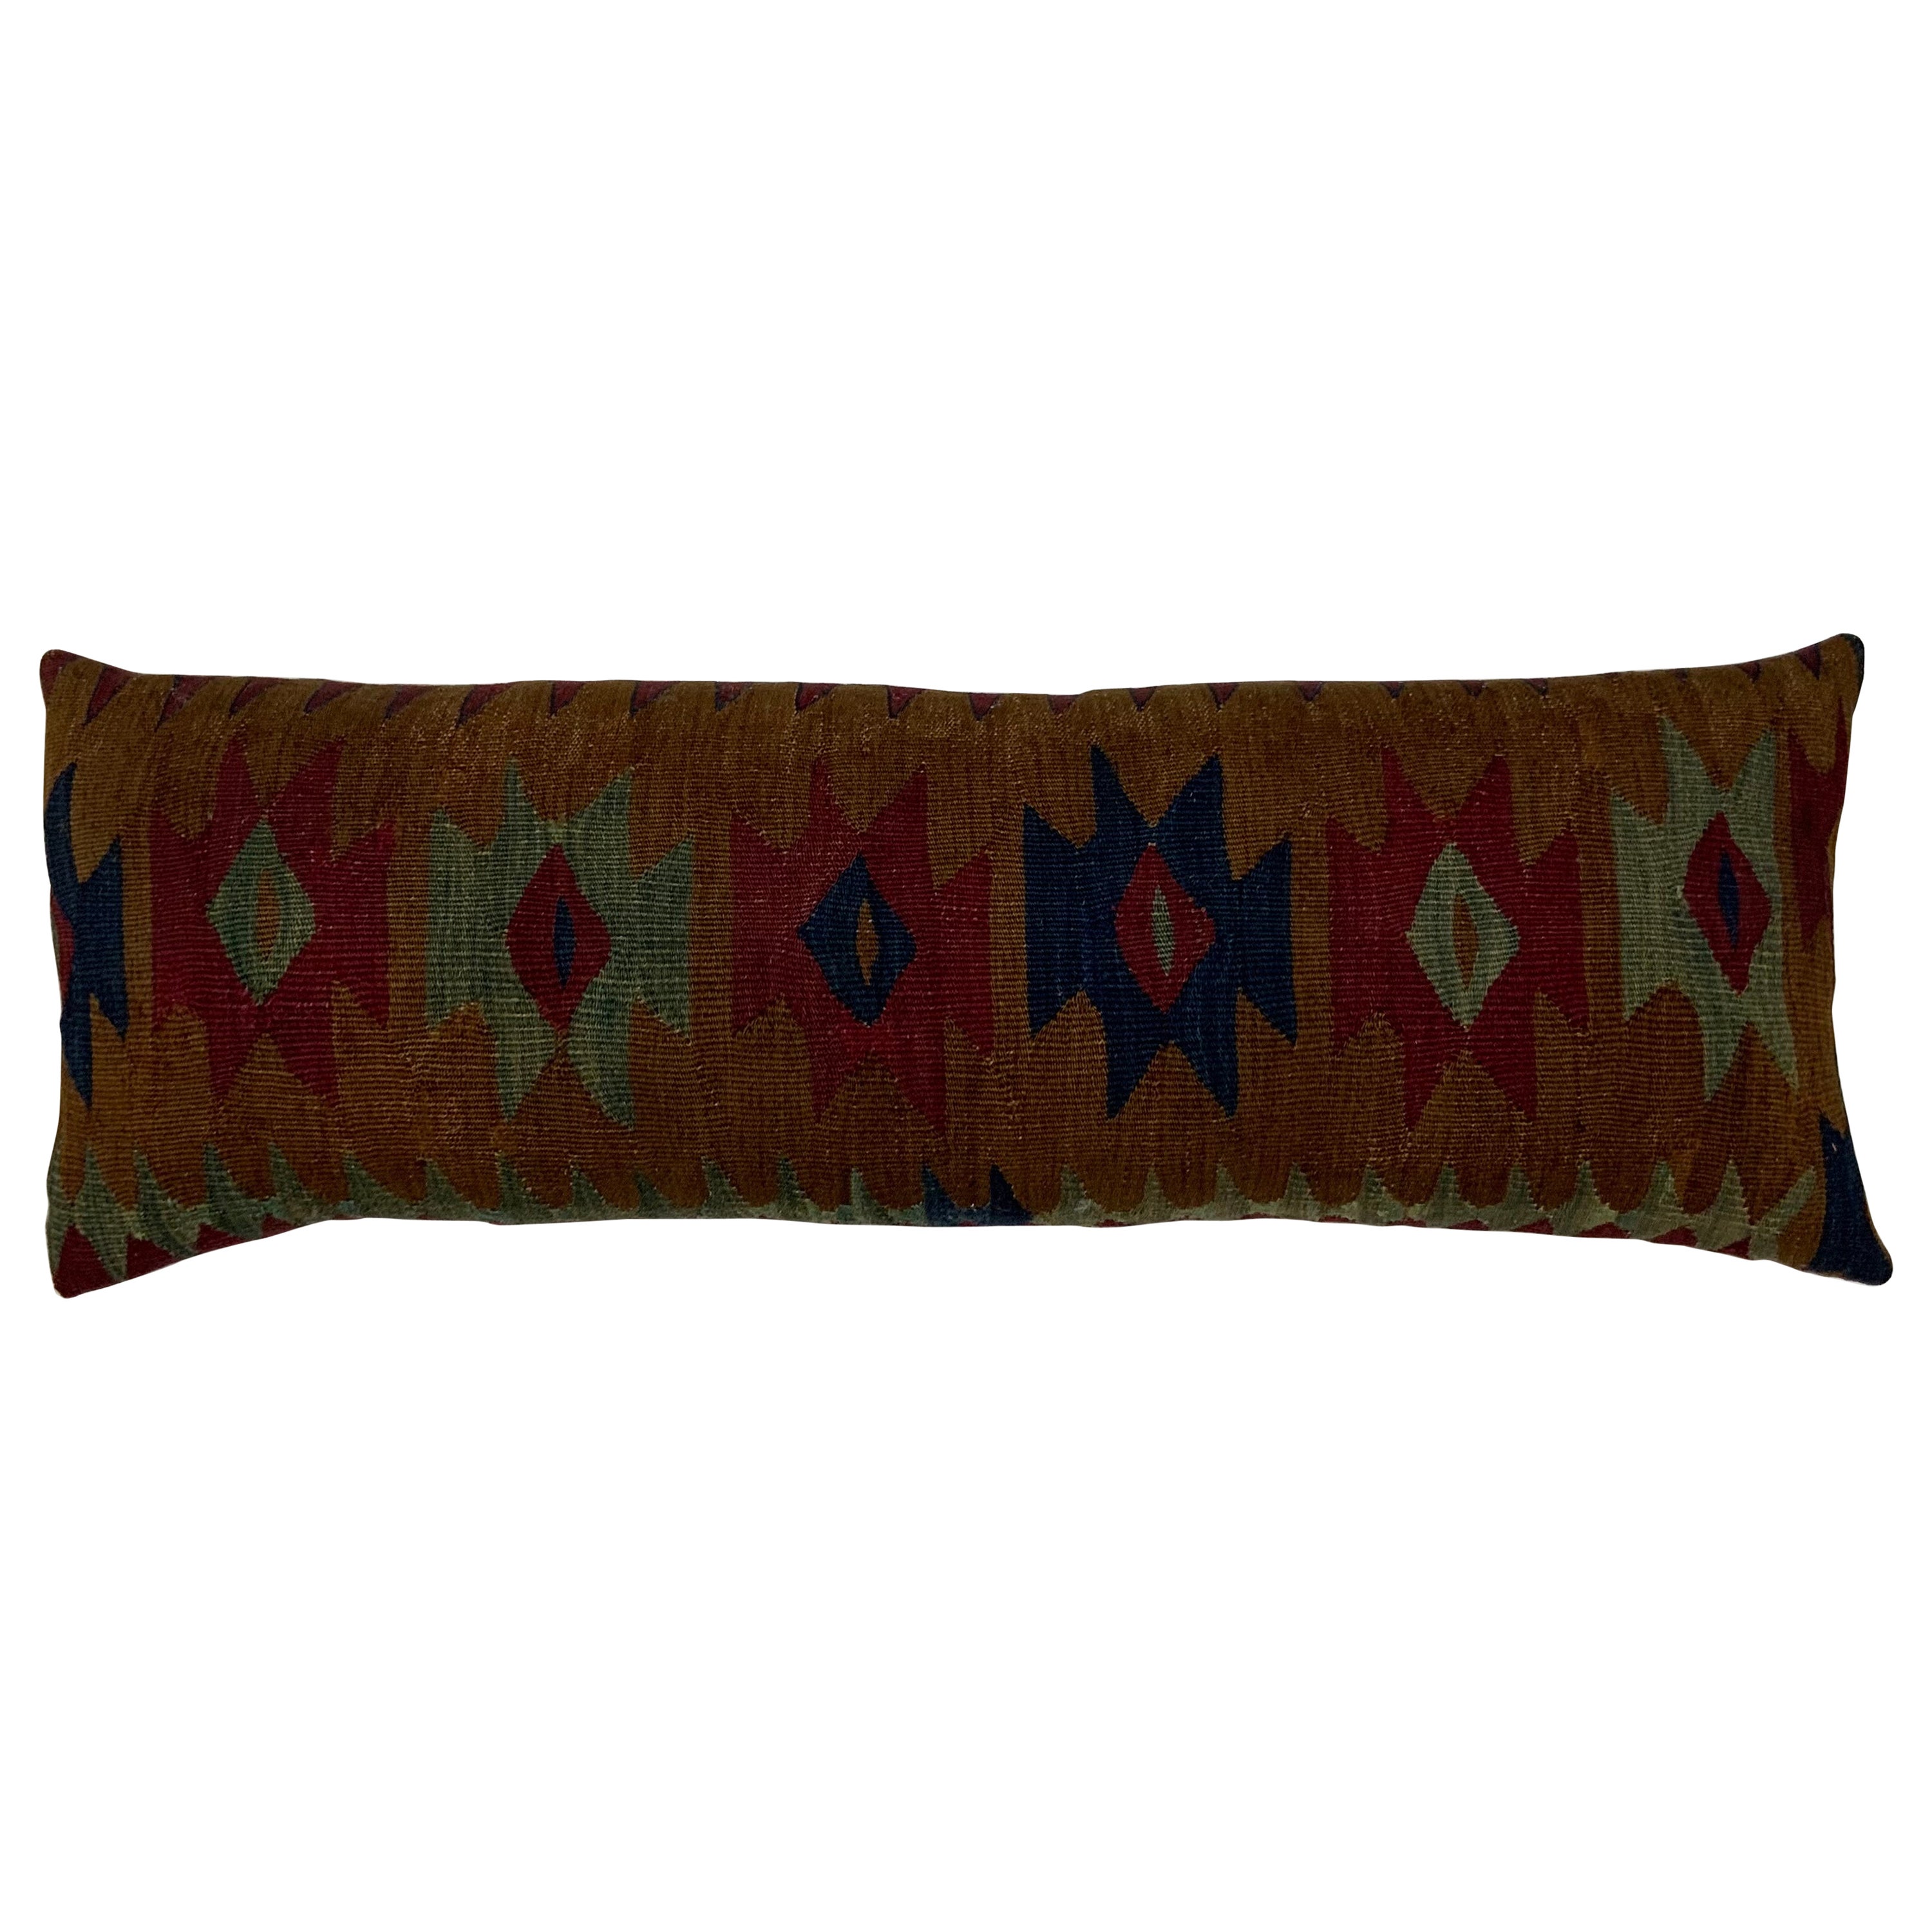 Antique 19 Century Flat Weave Textile Long Pillow